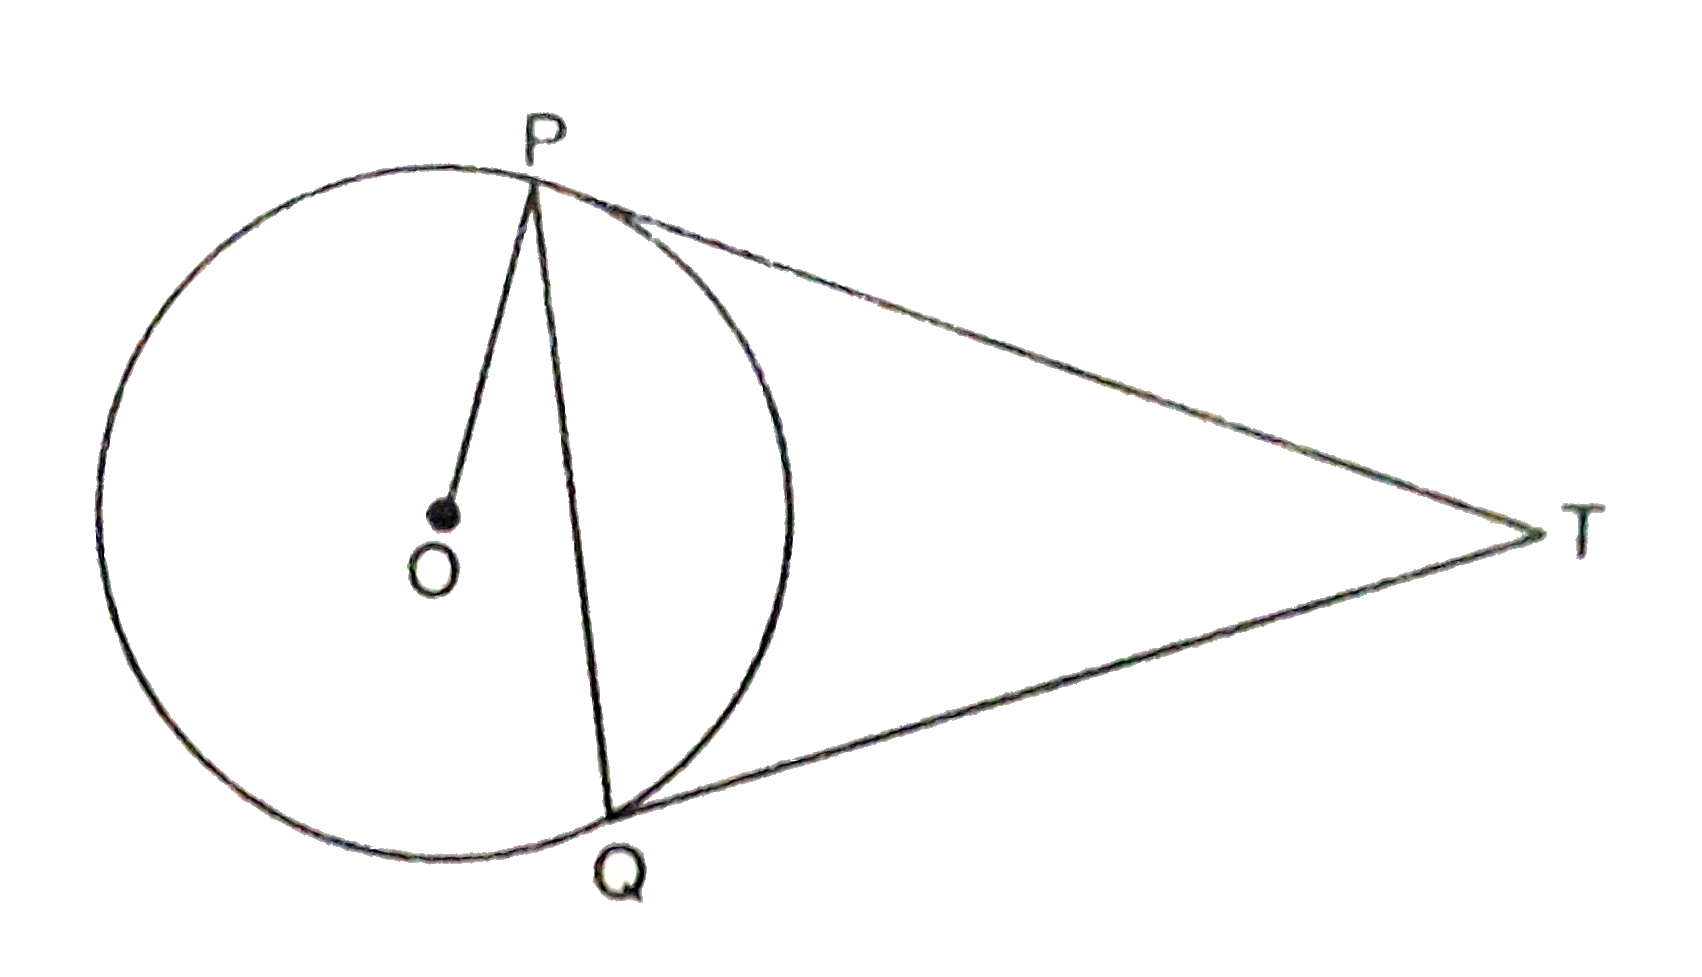 आकृति 4 में, O केन्द्र वाले वृत्त पर एक बाह्य बिन्दु T से वृत्त की दो स्पर्श रेखाएँ PT तथा TQ बनाई गई हैं। सिद्ध कीजिए कि anglePTQ=2angleOPQ।